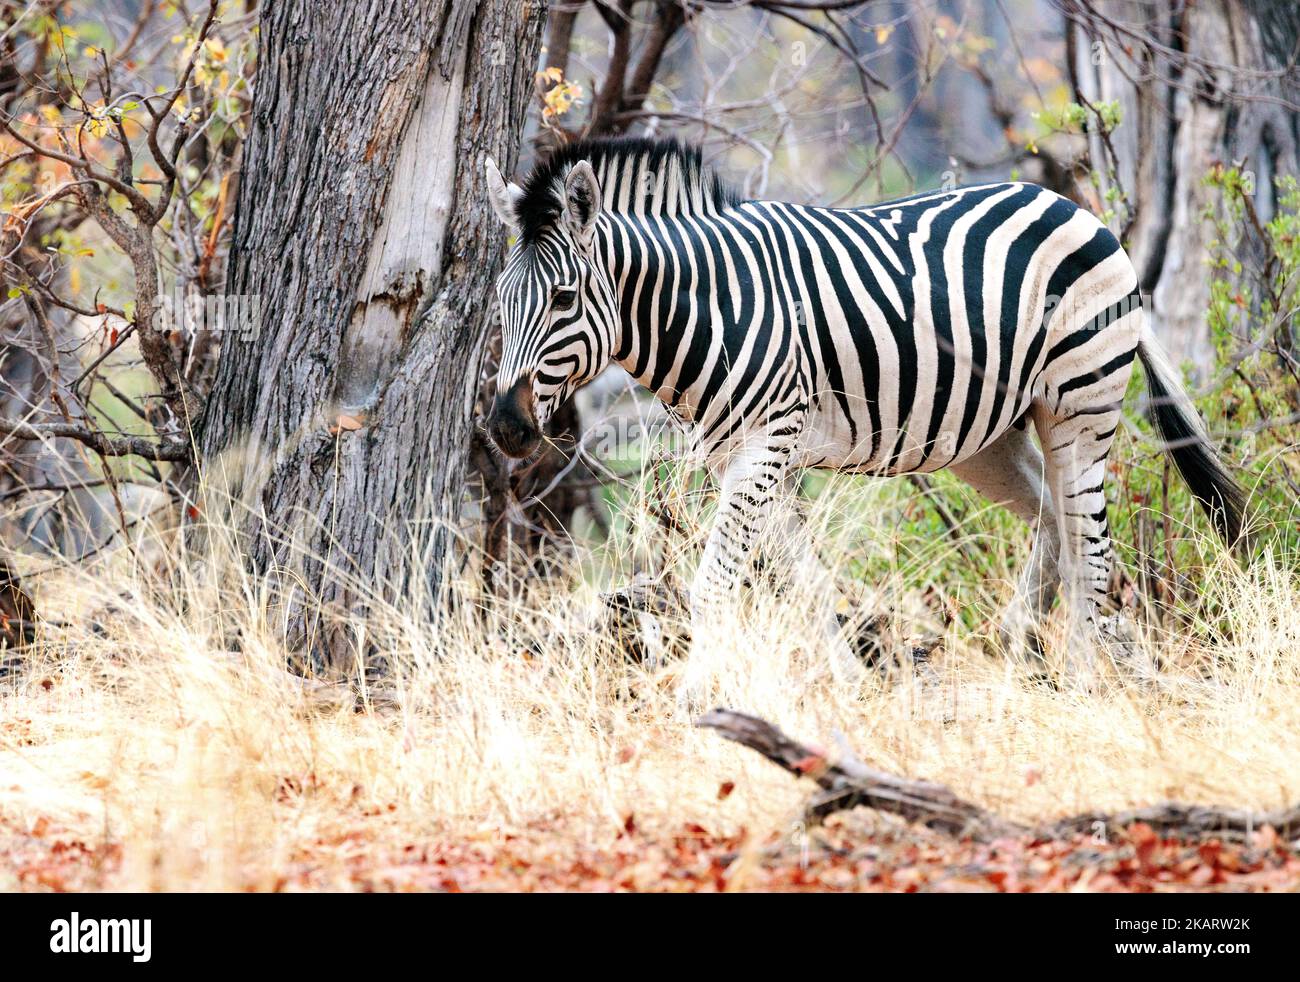 Burchells Zebra, Equus quagga burchellii; un zèbre adulte vu dans la réserve de gibier de Moremi, delta d'Okavango, Botswana Afrique. Animal sauvage africain Banque D'Images